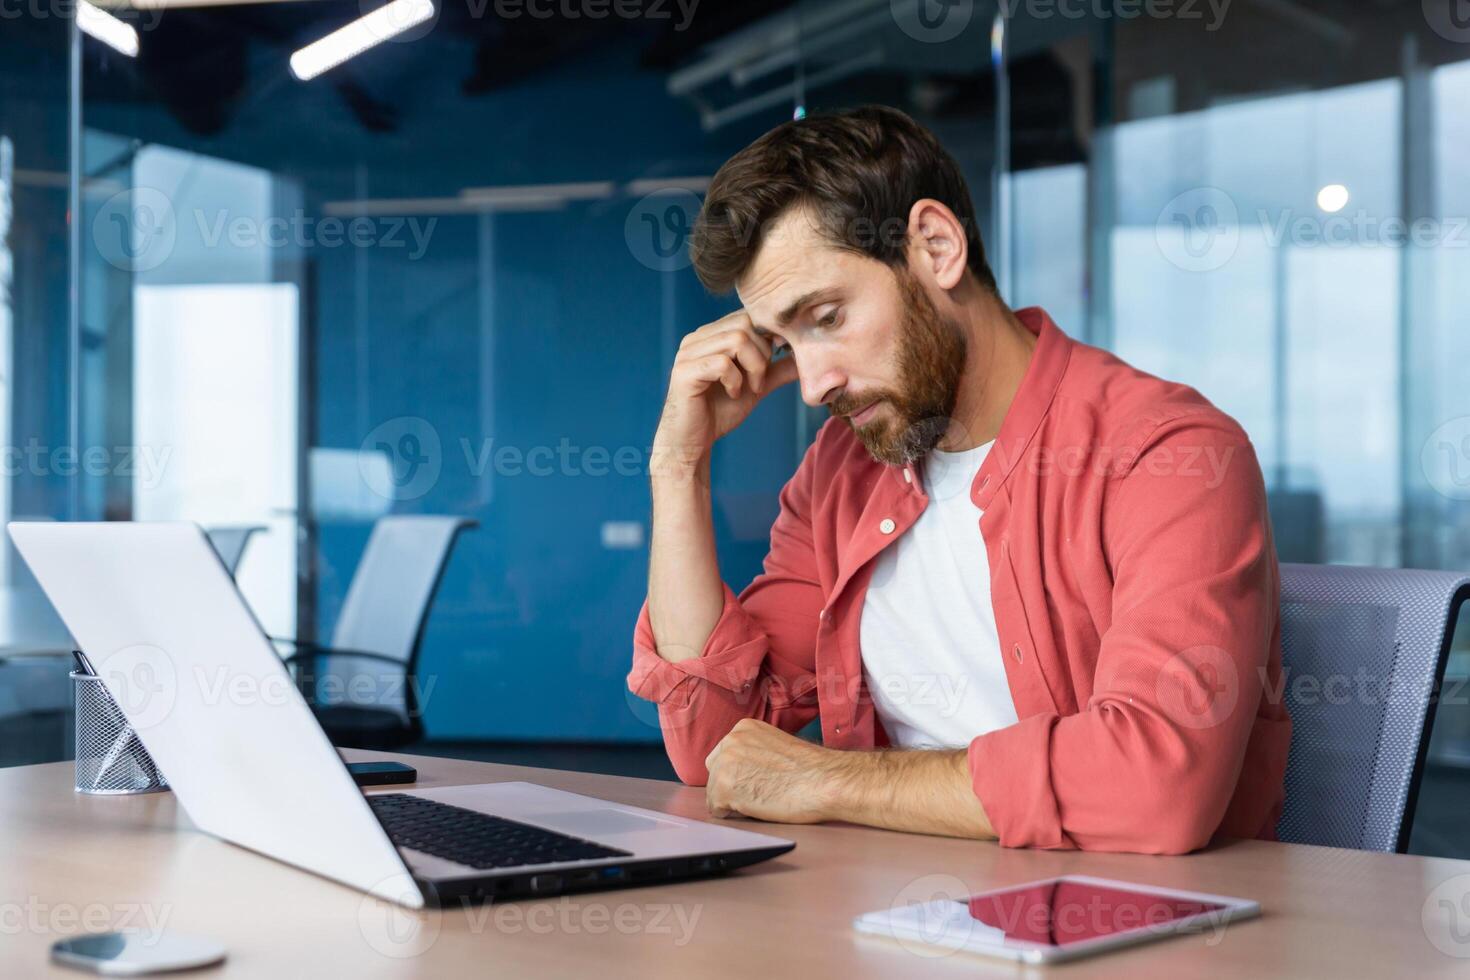 gefrustreerd zakenman depressief Bij werkplaats werken Aan laptop, Mens in overhemd van streek en verdrietig niet tevreden met slecht werk resultaten en prestatie binnen kantoor. foto